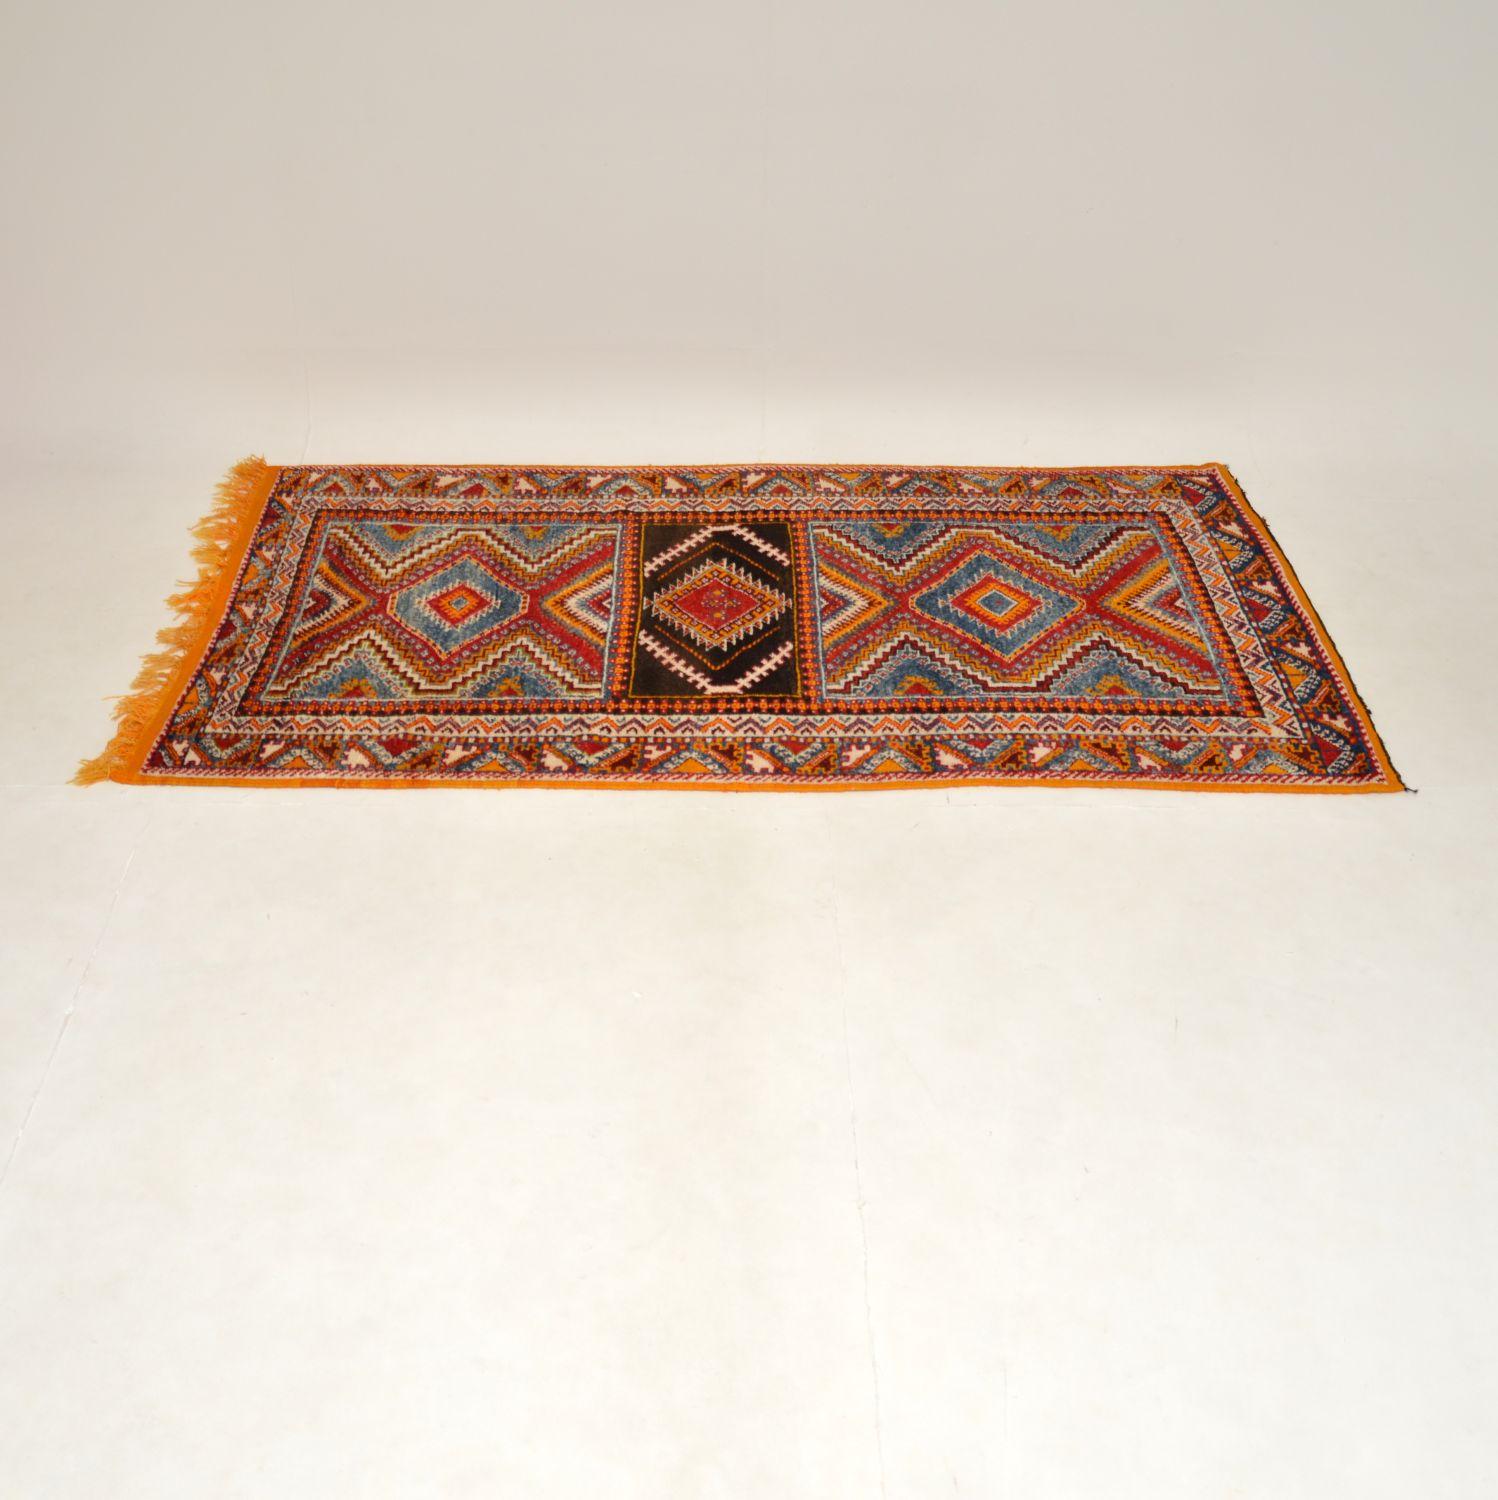 Eine atemberaubende und sehr gut gemacht großen antiken türkischen Teppich, aus der Zeit um die 1920er Jahre, oder früher.

Mit seinen schönen Mustern und leuchtenden Farben ist er ein wirklich wunderschöner antiker Teppich.

Der Zustand ist